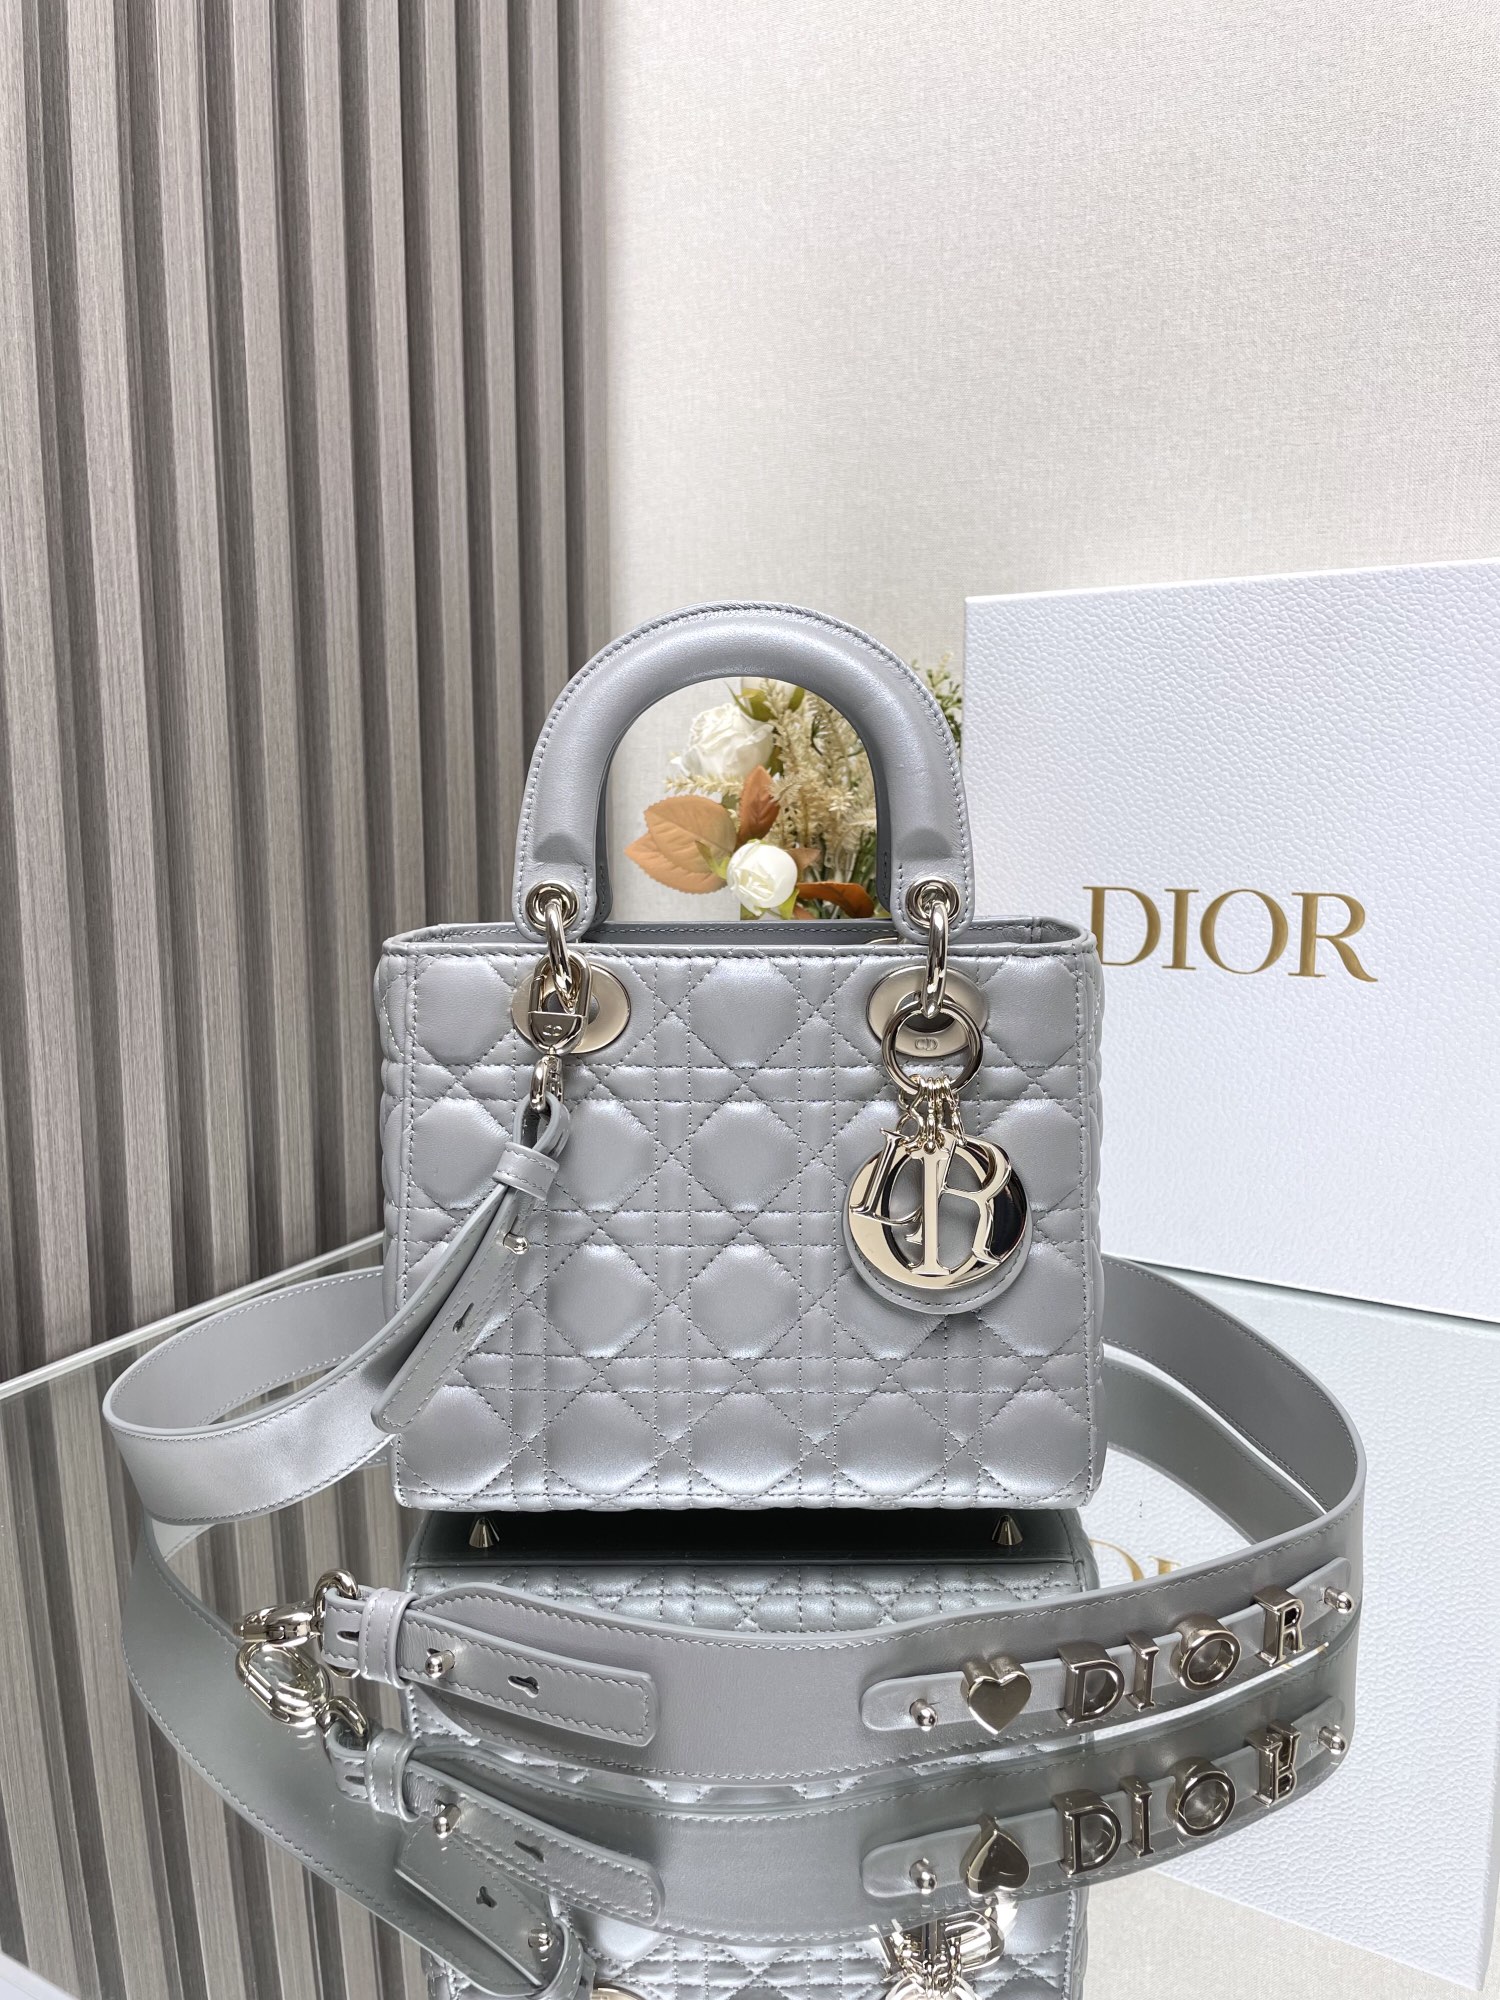 Kaufen Sie günstige hohe Qualität 1: 1 Replikat
 Dior Taschen Handtaschen Weiß Lammfell Schaffell Lady Ketten